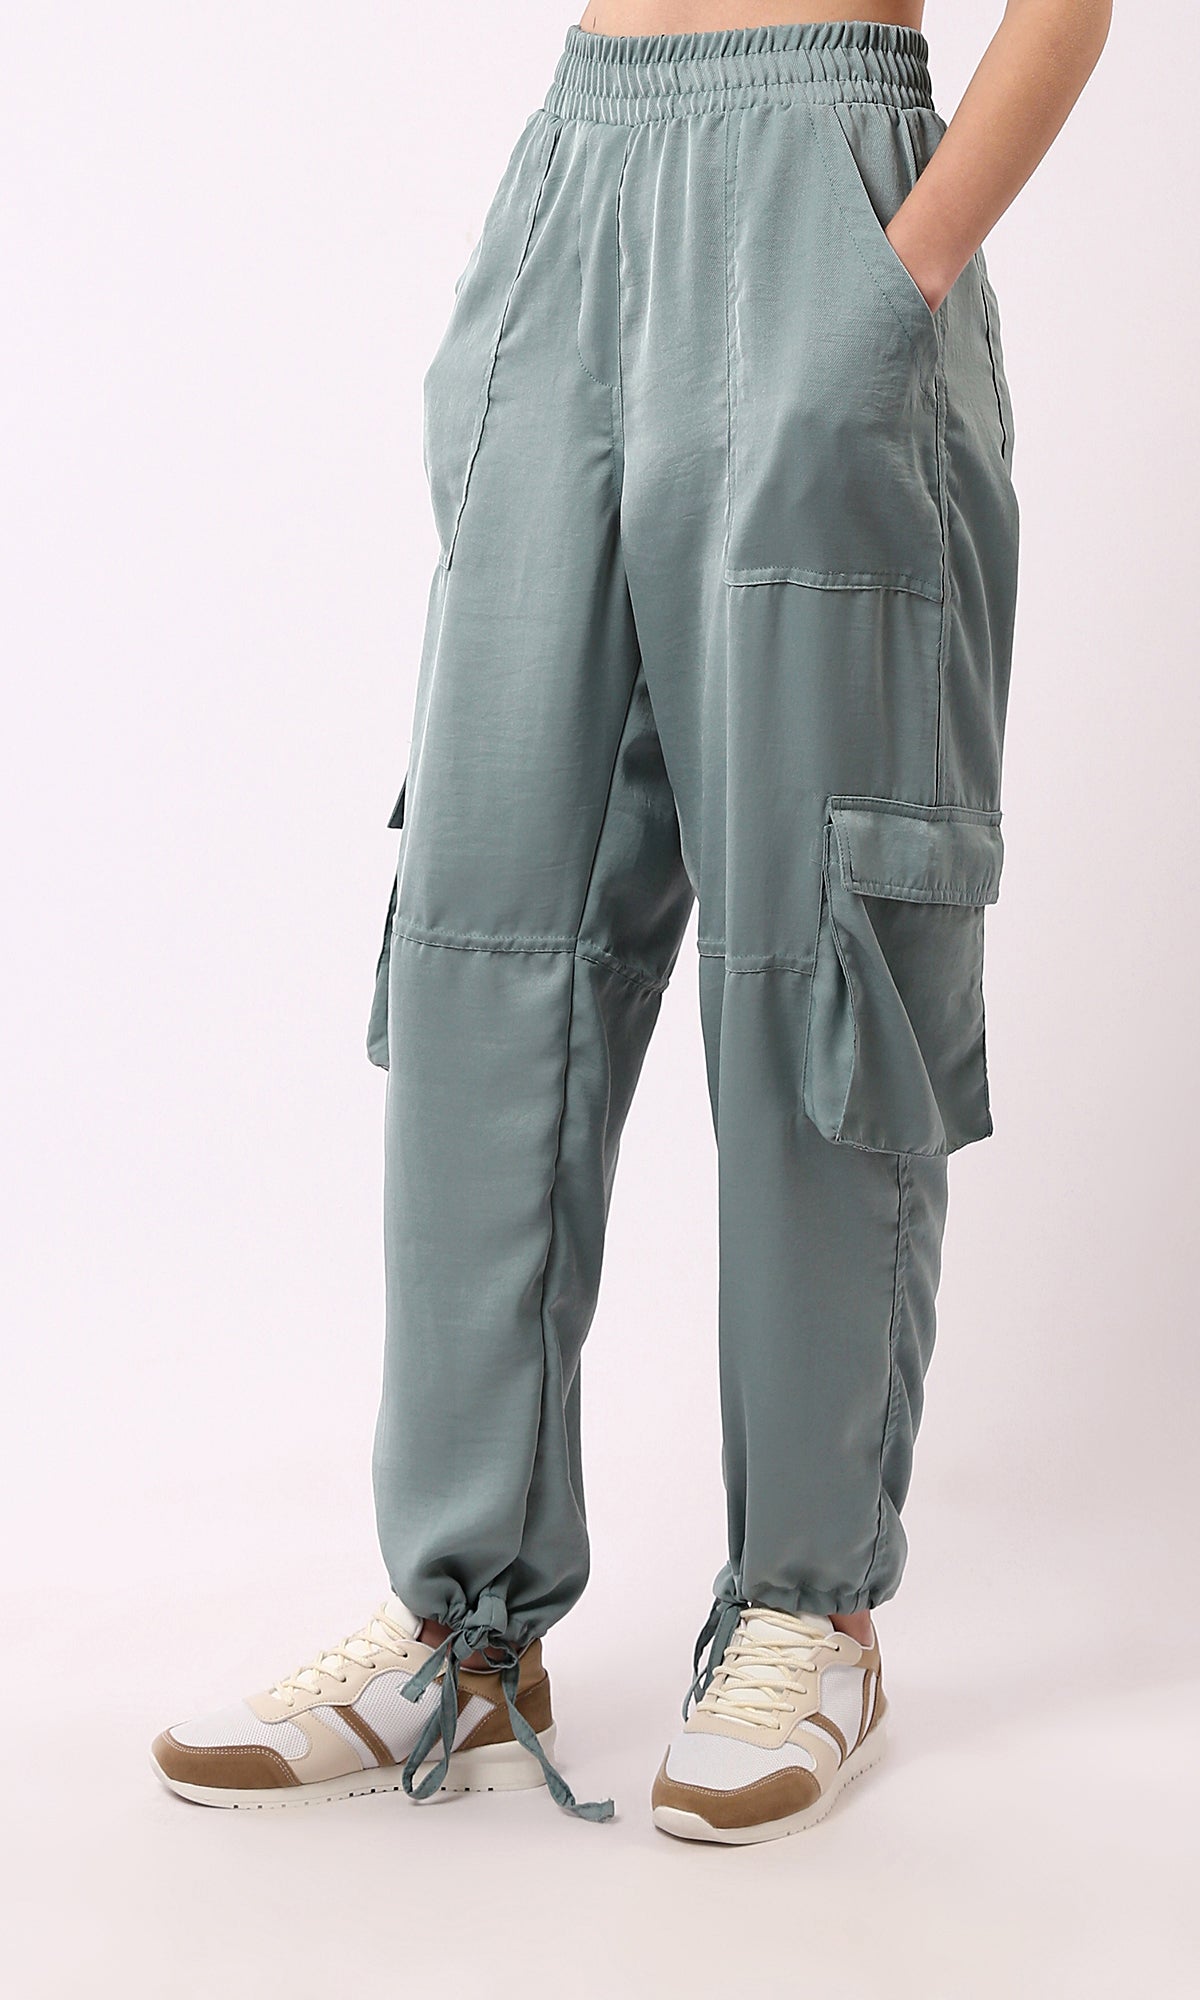 O179139 Coton de pantalon pour femmes